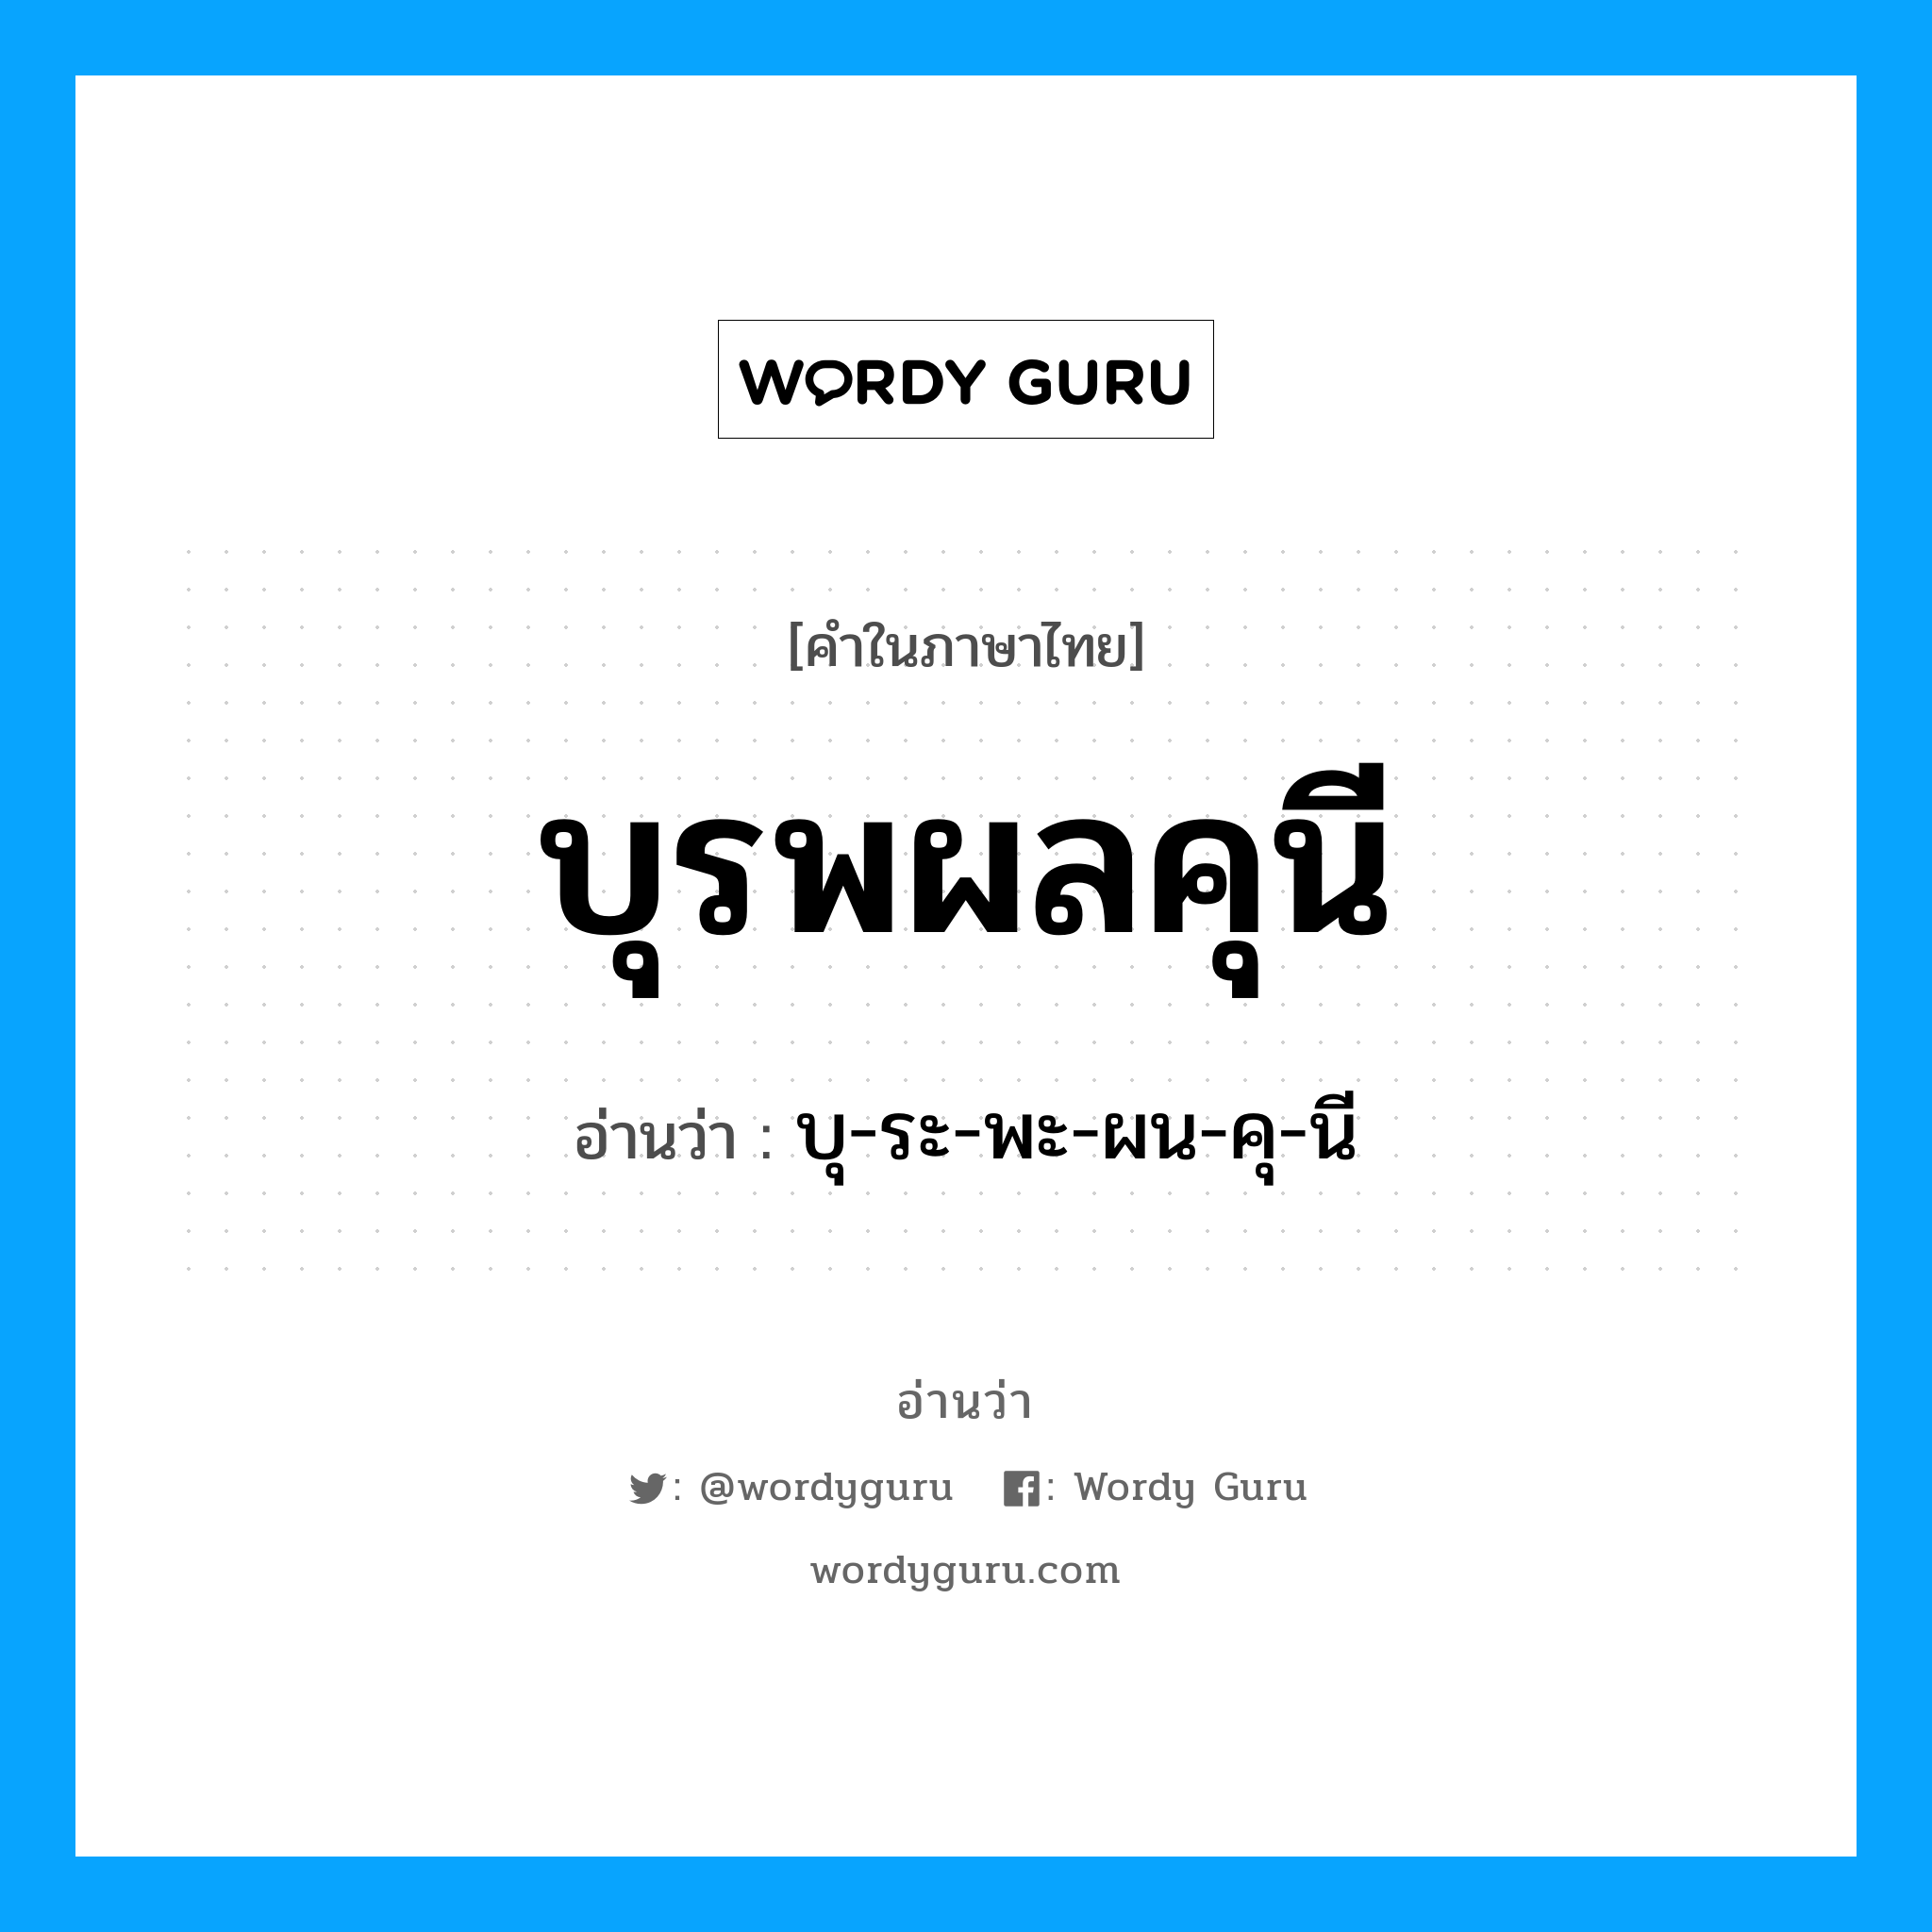 บุ-ระ-พะ-ผน-คุ-นี เป็นคำอ่านของคำไหน?, คำในภาษาไทย บุ-ระ-พะ-ผน-คุ-นี อ่านว่า บุรพผลคุนี